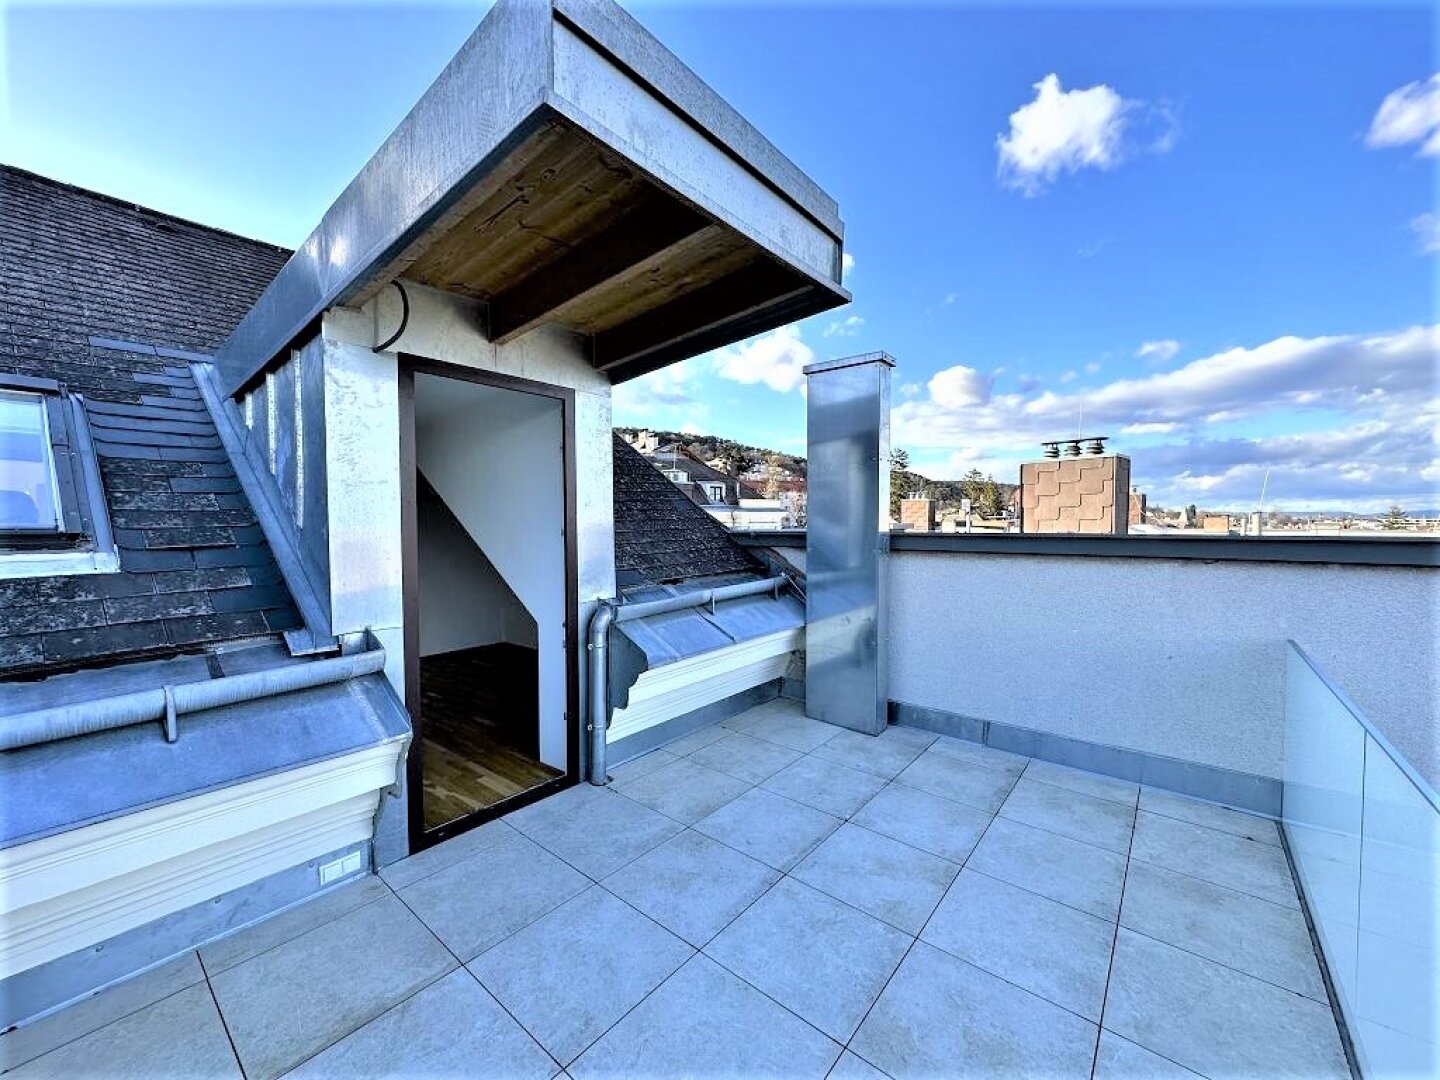 KLIMATISIERTES 68 m2 Dachgeschoss mit 14 m2 Terrasse, 3 Zimmer, Extraküche, Wannenbad, Stadtblick, Dr. Ludwig-Rieger-Straße